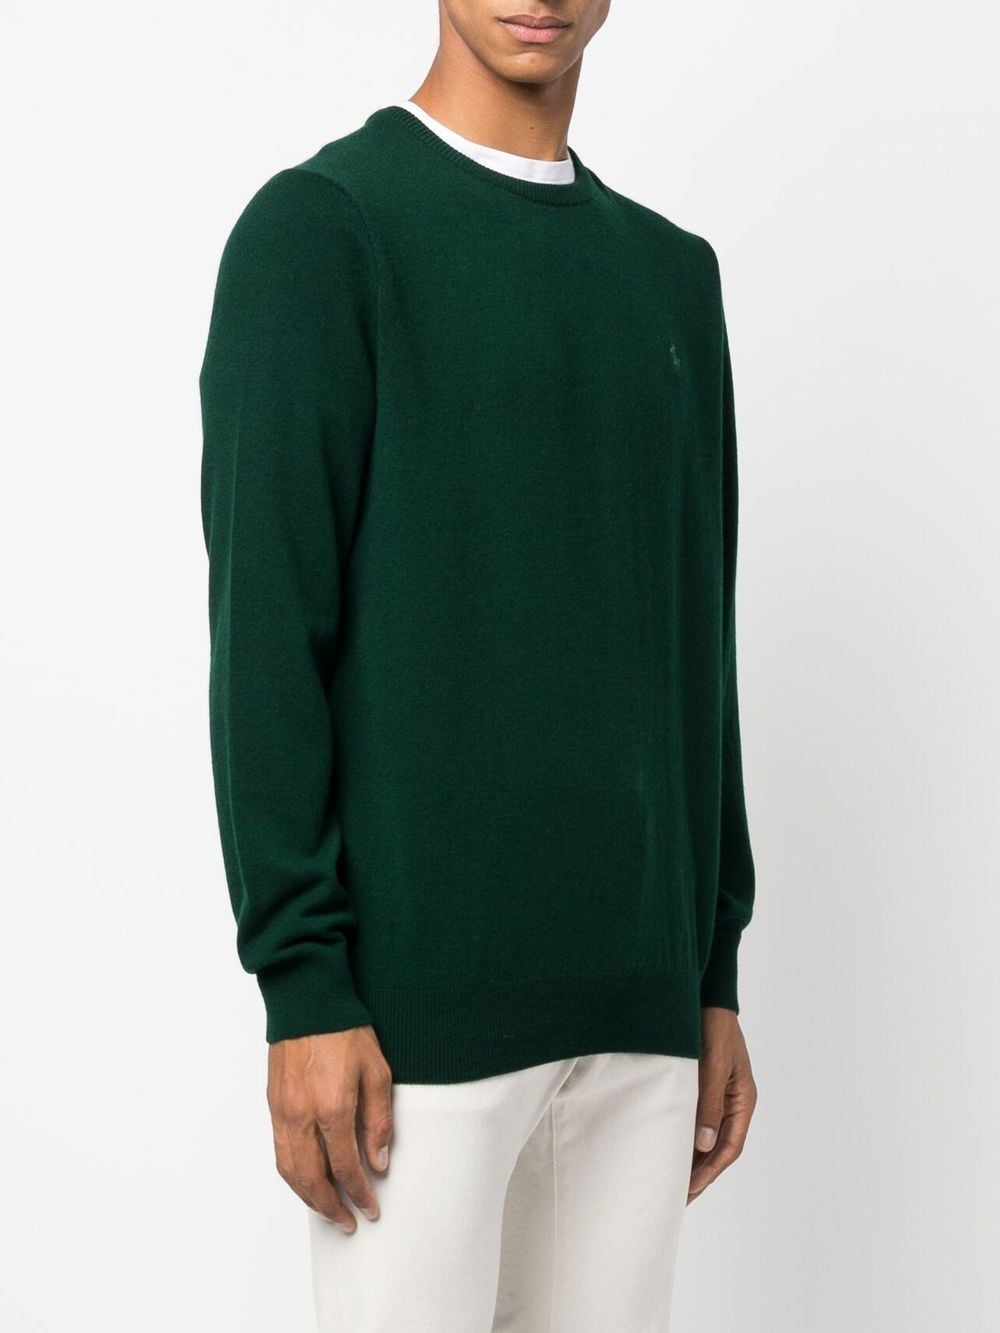 maglione verde con logo